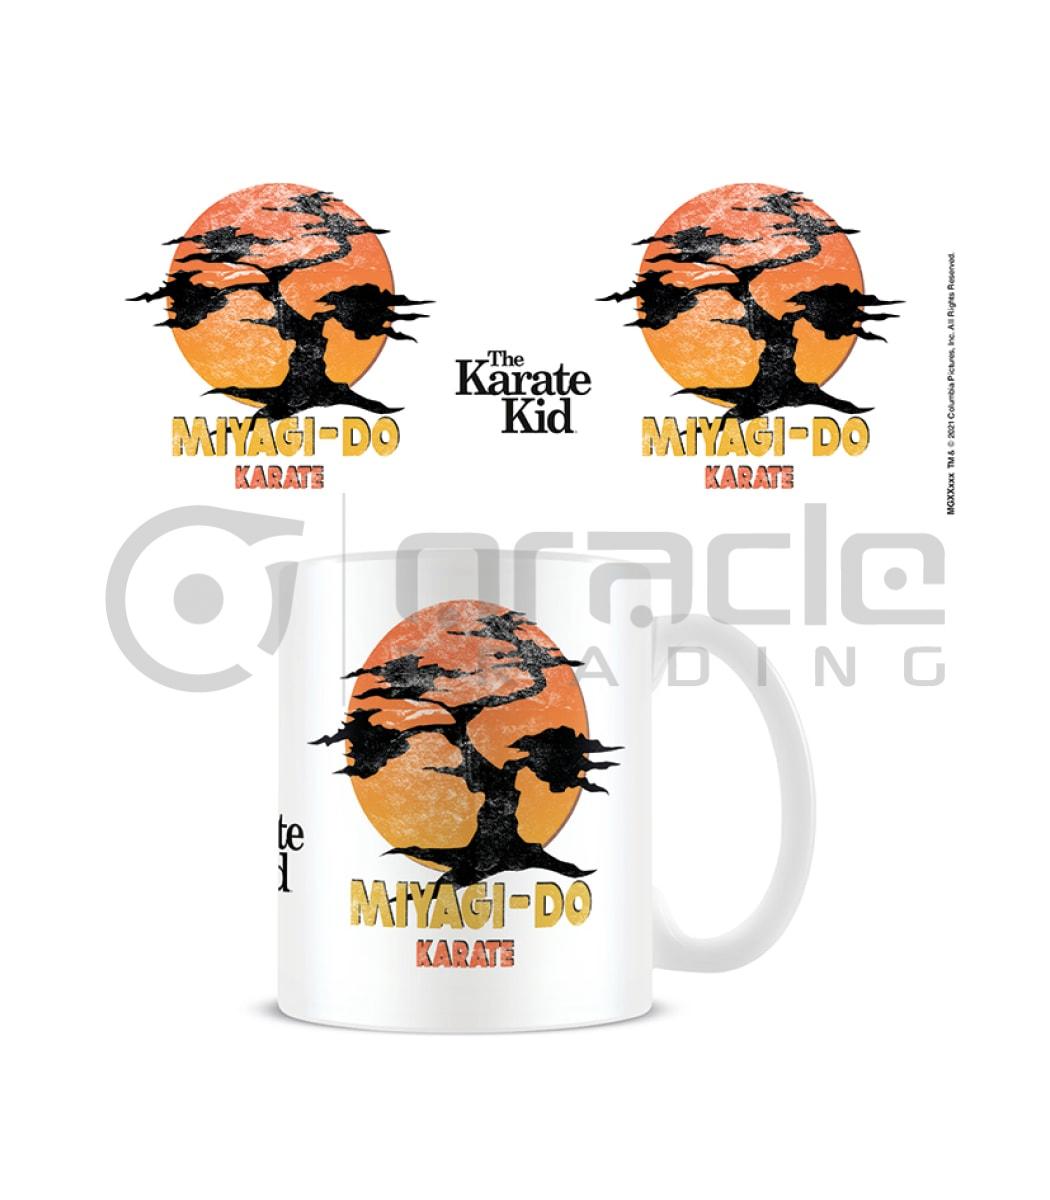 The Karate Kid Mug - Miyagi-Do